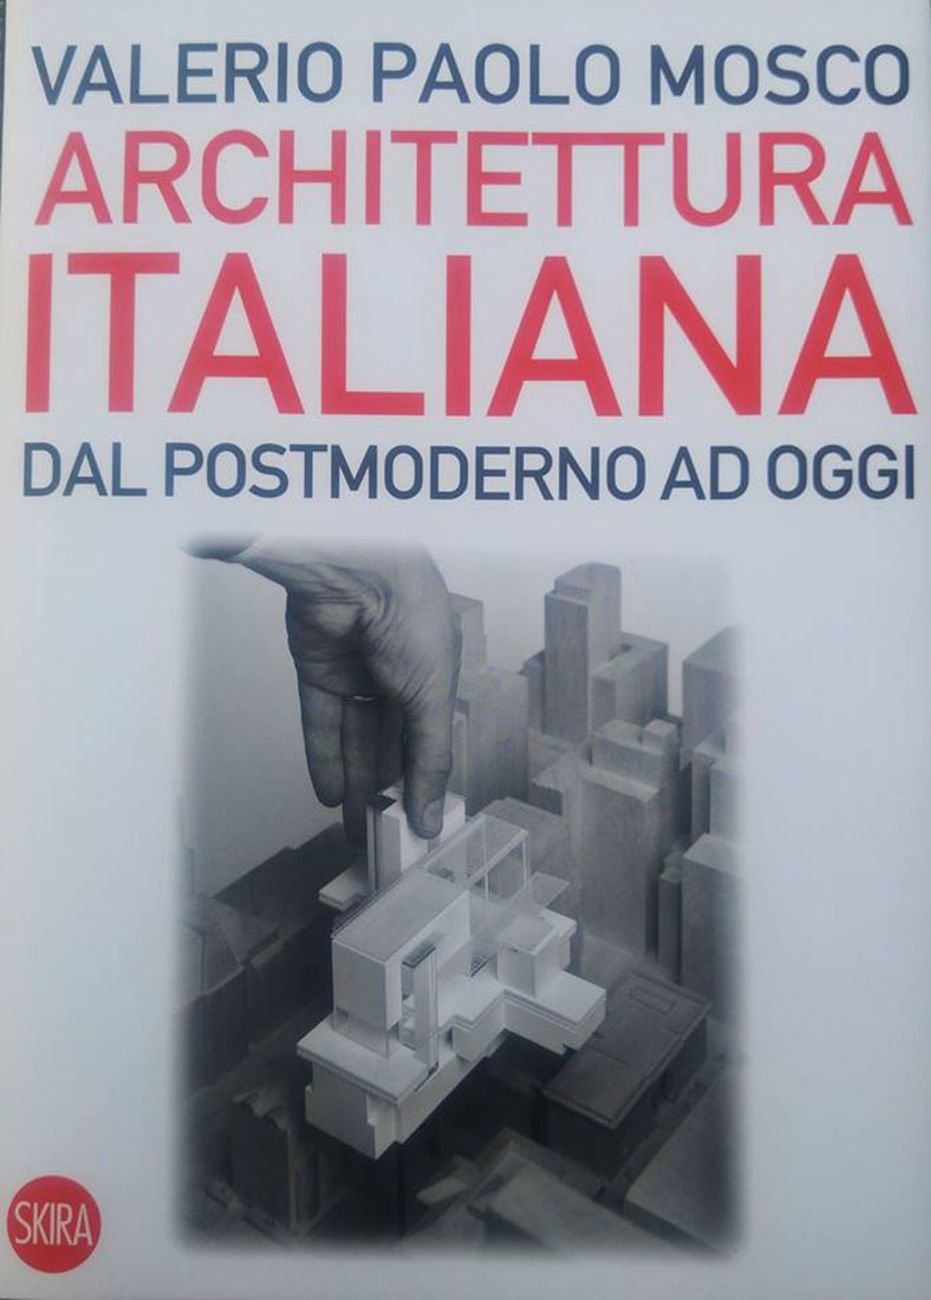 Valerio Paolo Mosco ‒ Architettura italiana (Skira Editore, Milano 2017)